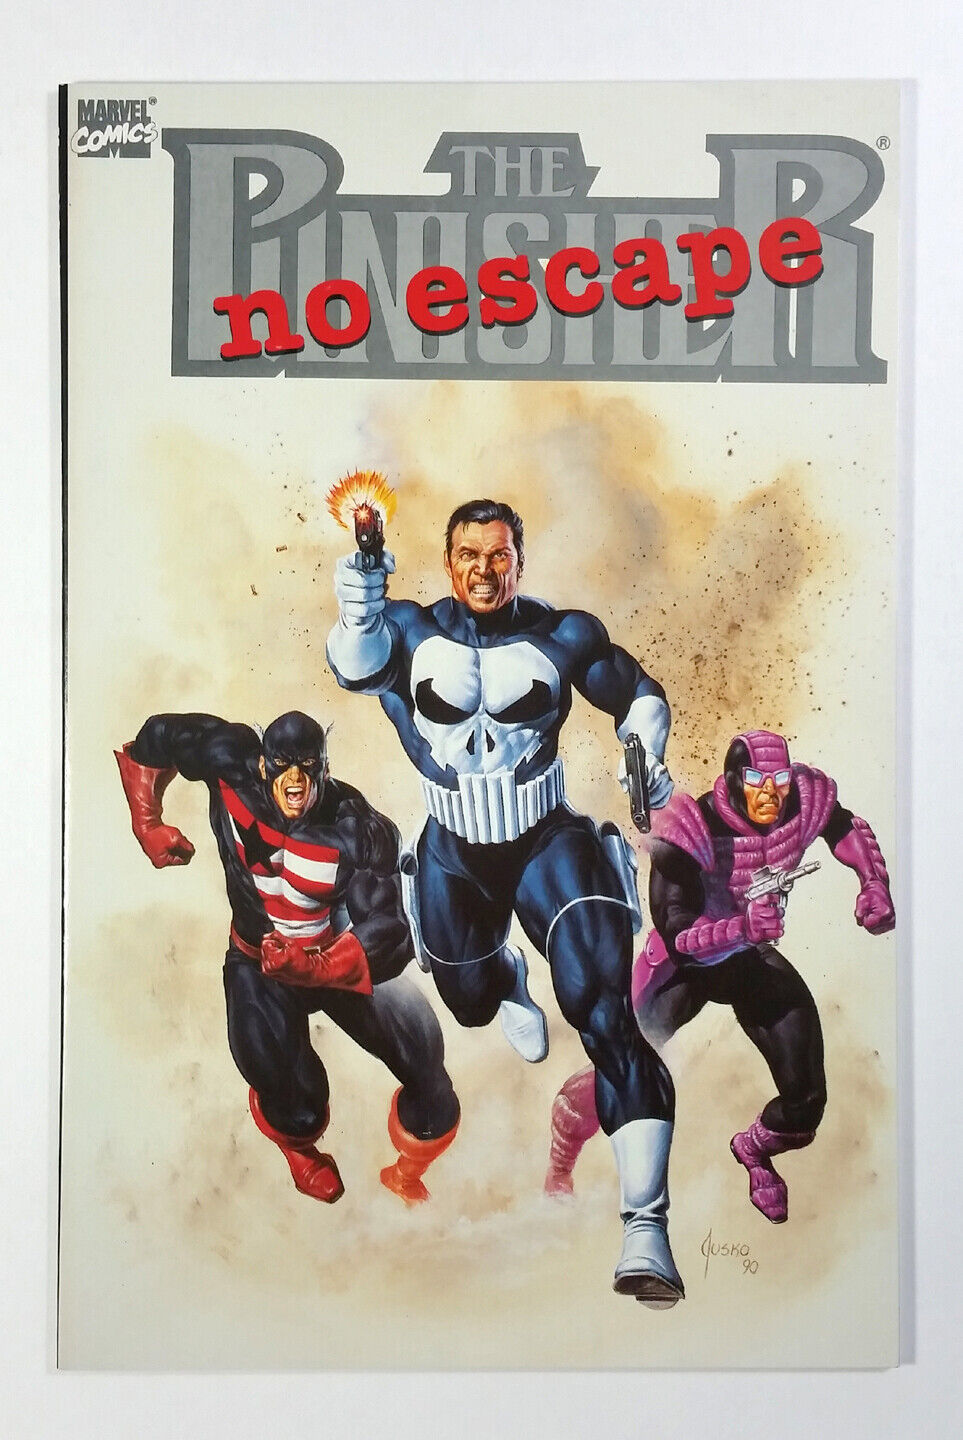 THE PUNISHER Vol. 1 No Escape TPB  (1990) Marvel Comics New